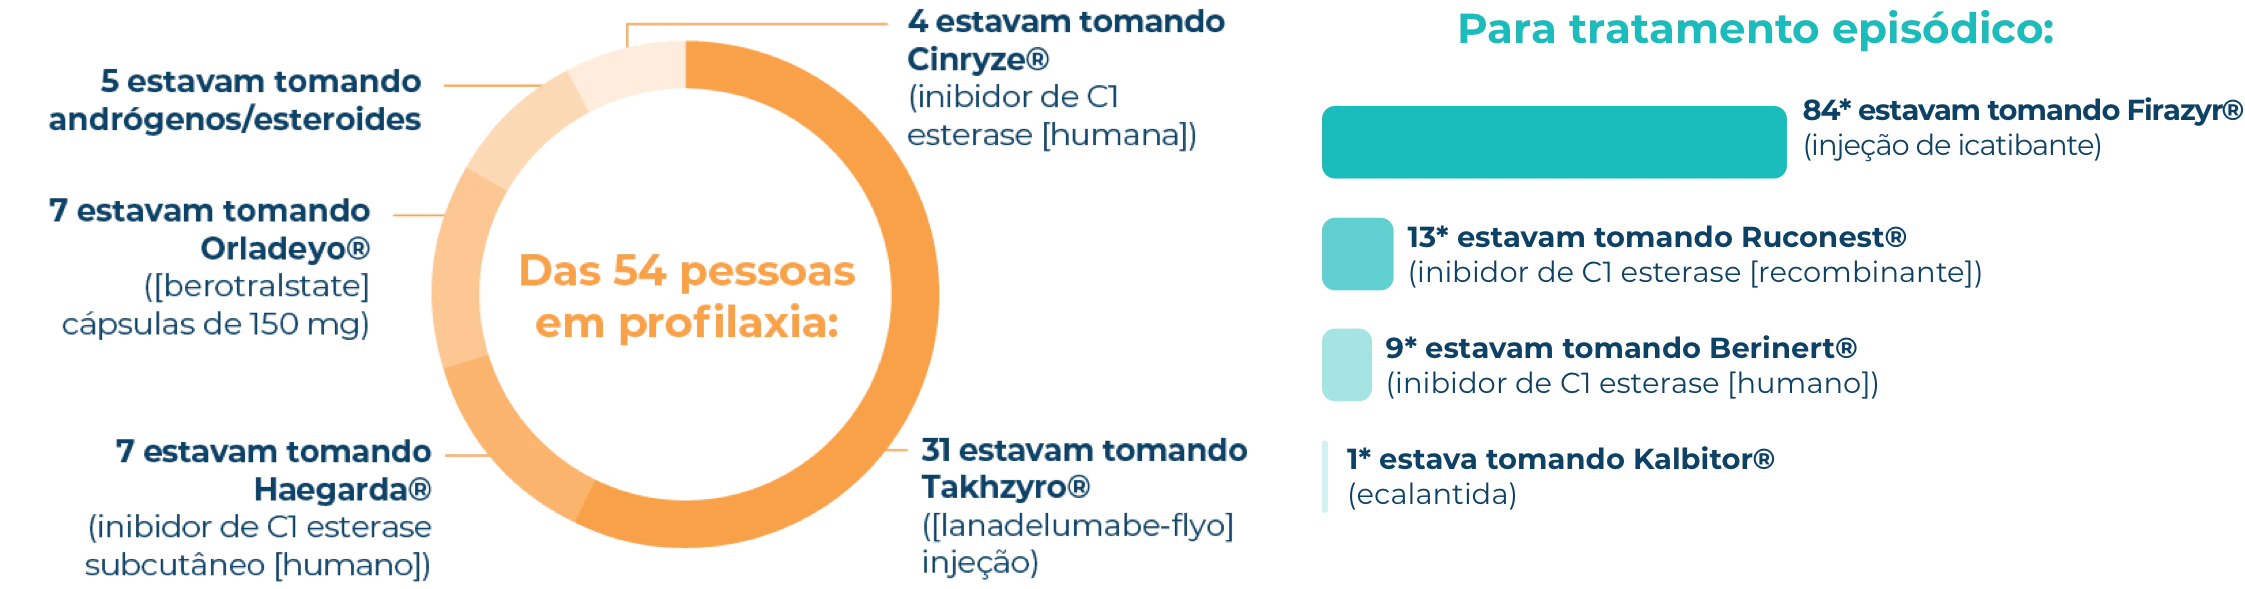 Infográfico da divisão do tratamento profilático para pessoas na pesquisa de crise de AEH.